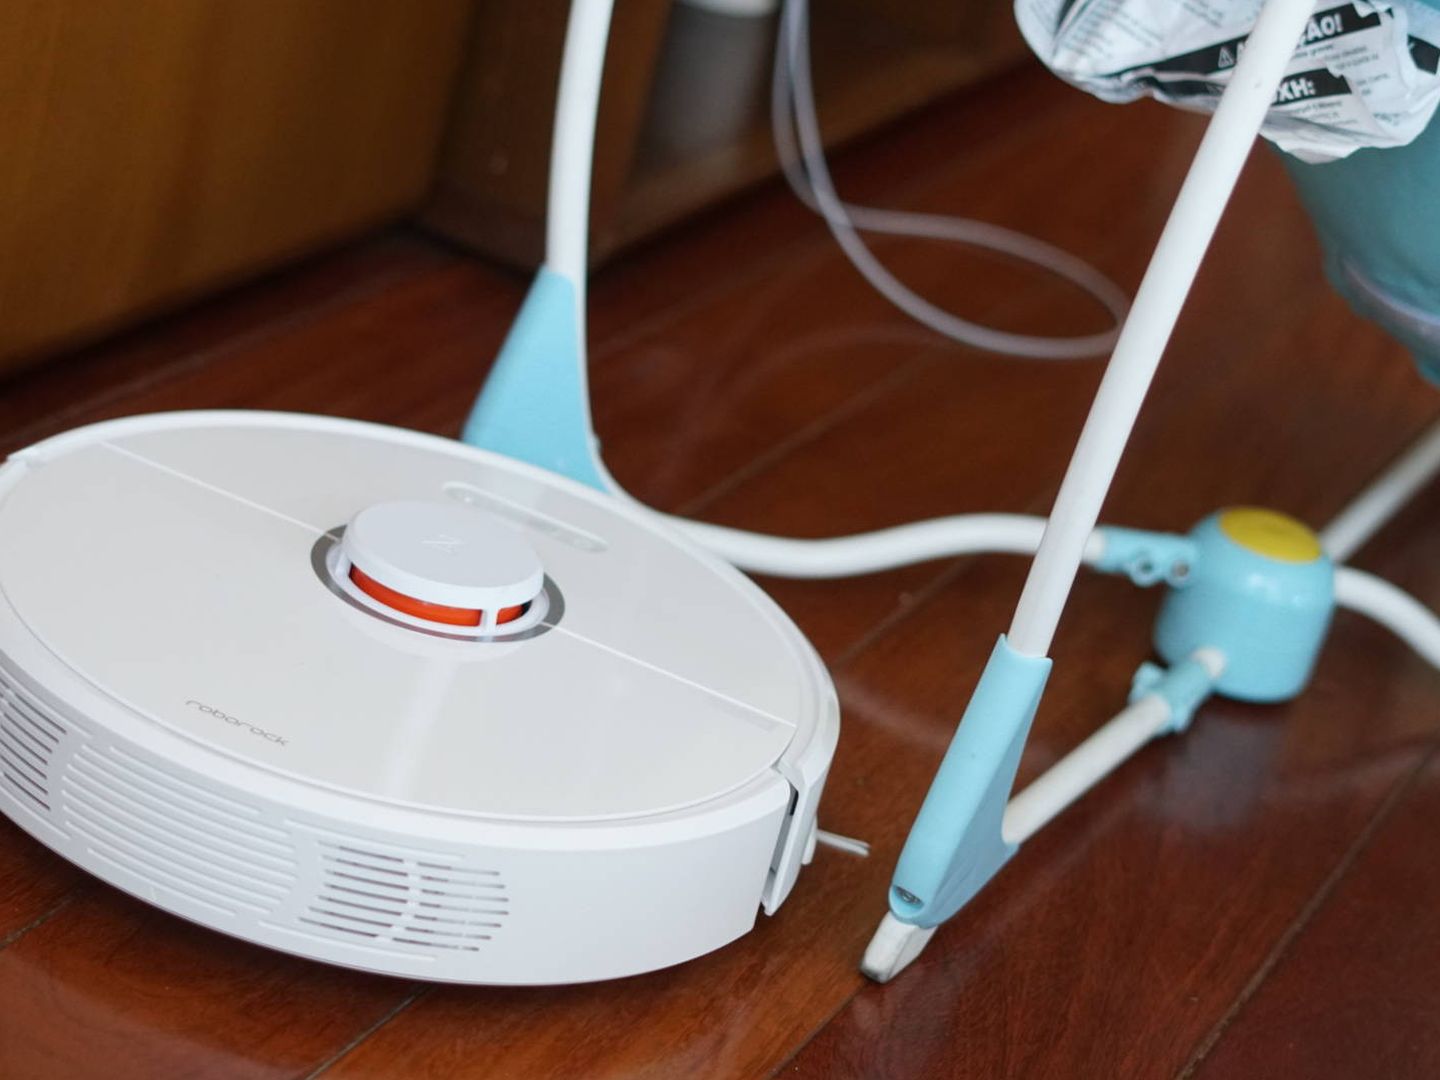 Cargador integrado para iRobot Roomba con cable norteamericano.